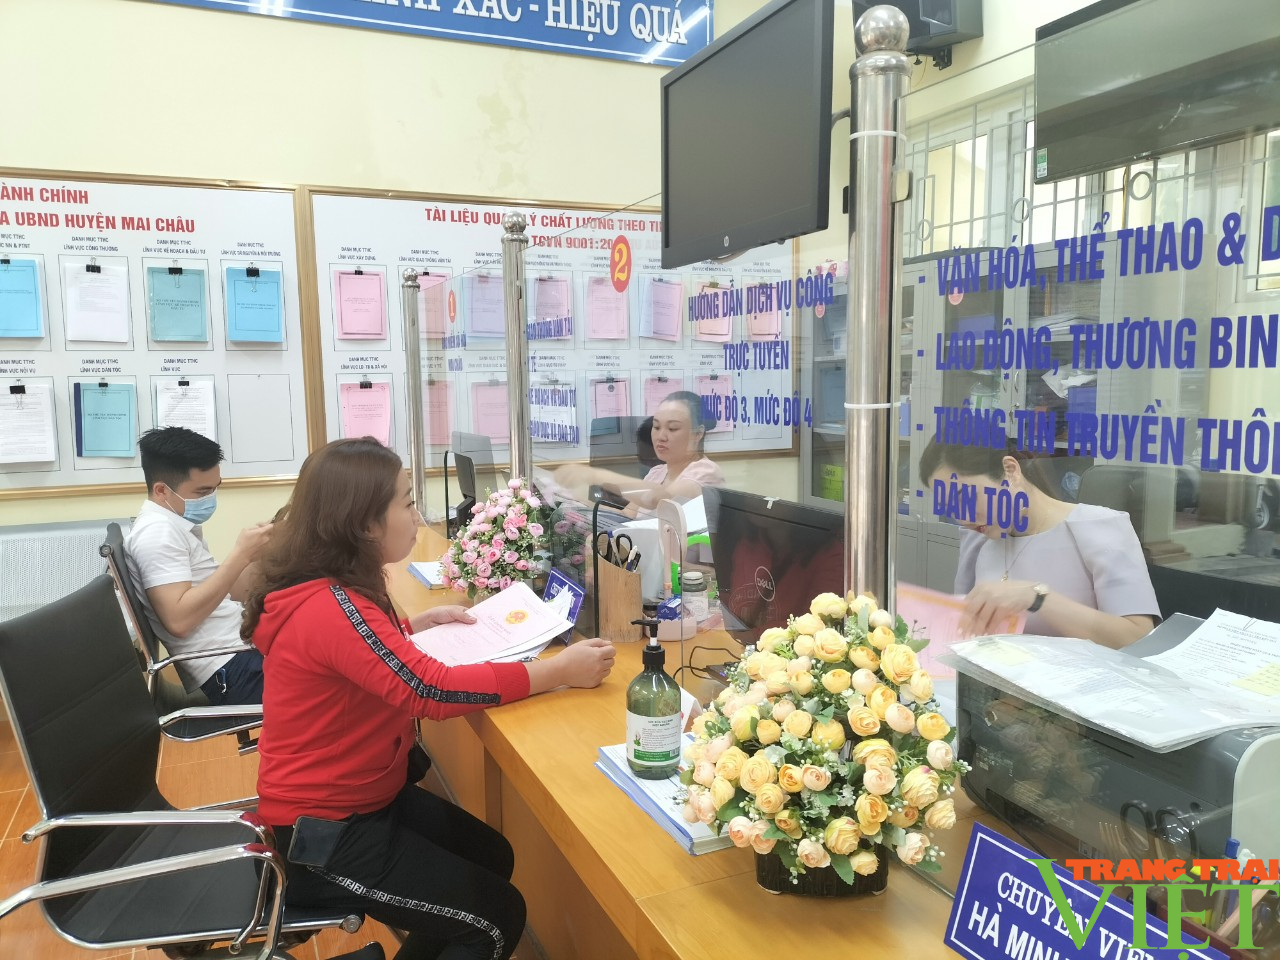 Huyện Mai Châu: Hướng đến cải cách hành chính dân chủ, hiện đại - Ảnh 6.